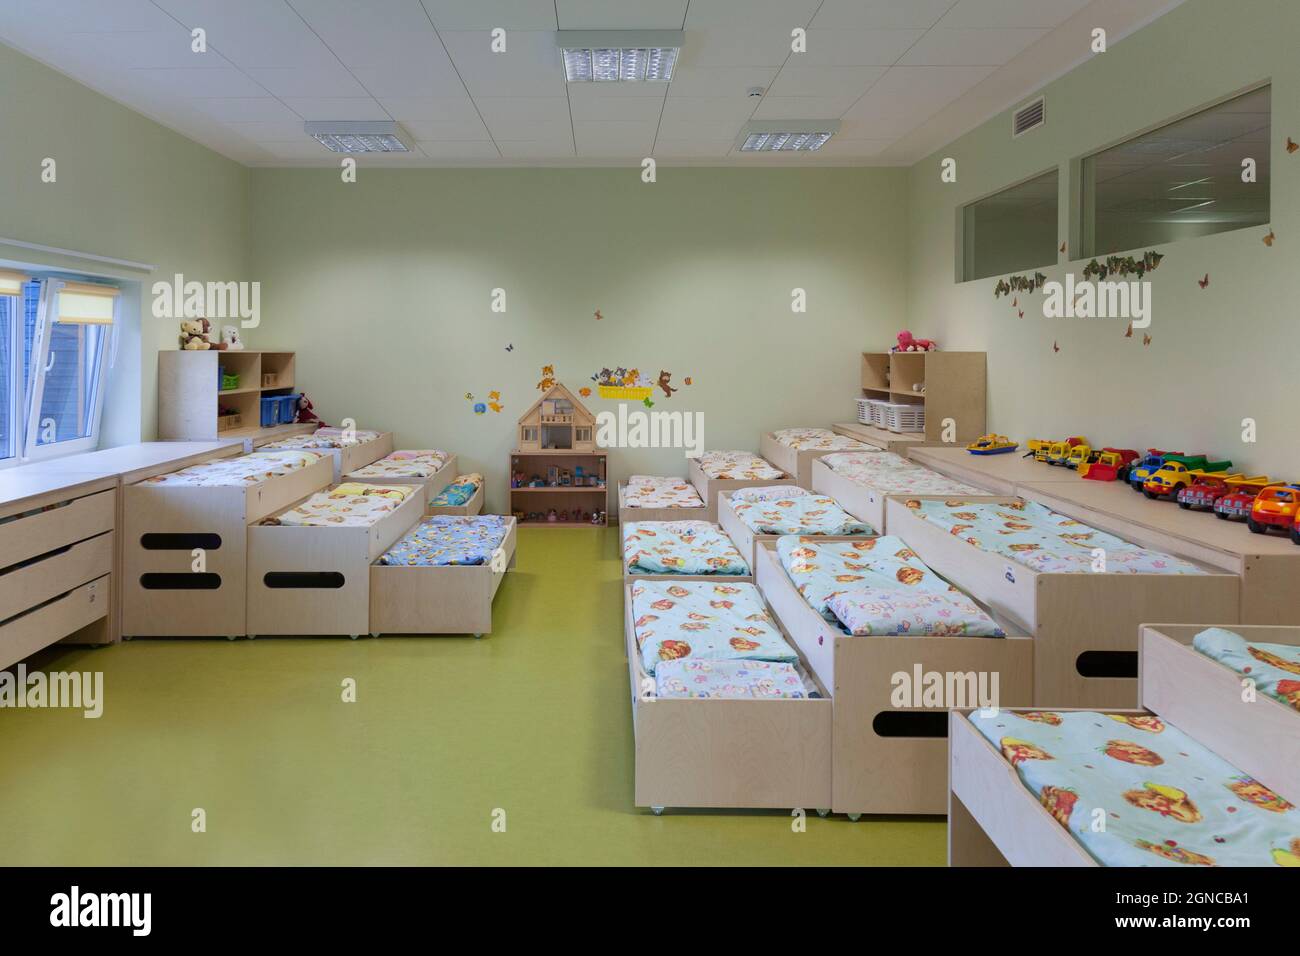 Garderie moderne ou école maternelle pré-scolaire, chambres à coucher pour  la sieste, lits superposés Photo Stock - Alamy